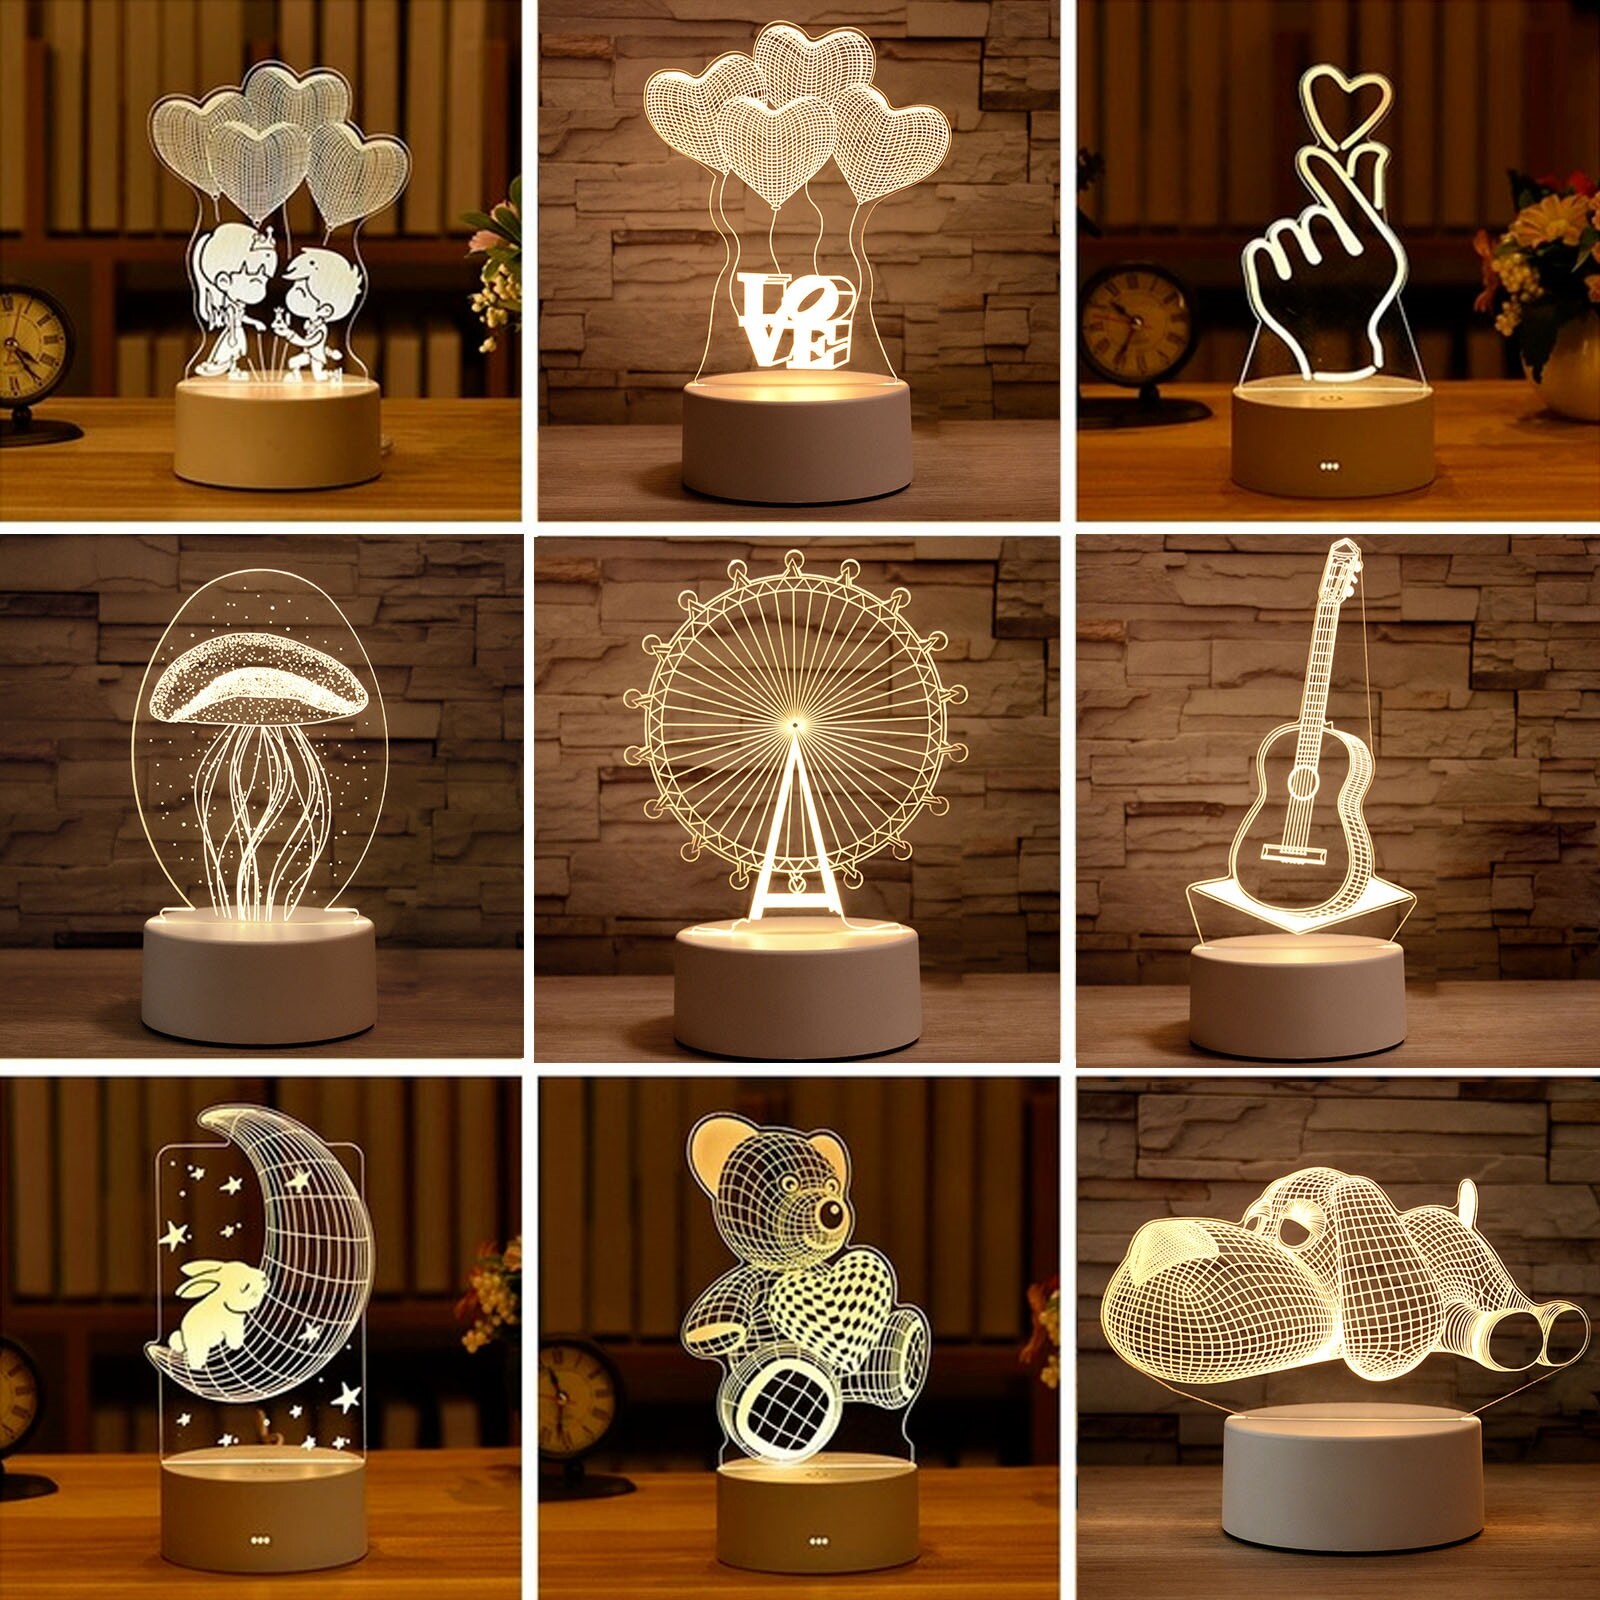 [Super bright bulb] Đèn 3D Tình Yêu Lãng Mạn Bóng Bay Hình Trái Tim Đèn Ngủ LED Acrylic Trang Trí Để Bàn Quà Tặng Vợ Yêu Ngày Lễ Tình Nhân 39;